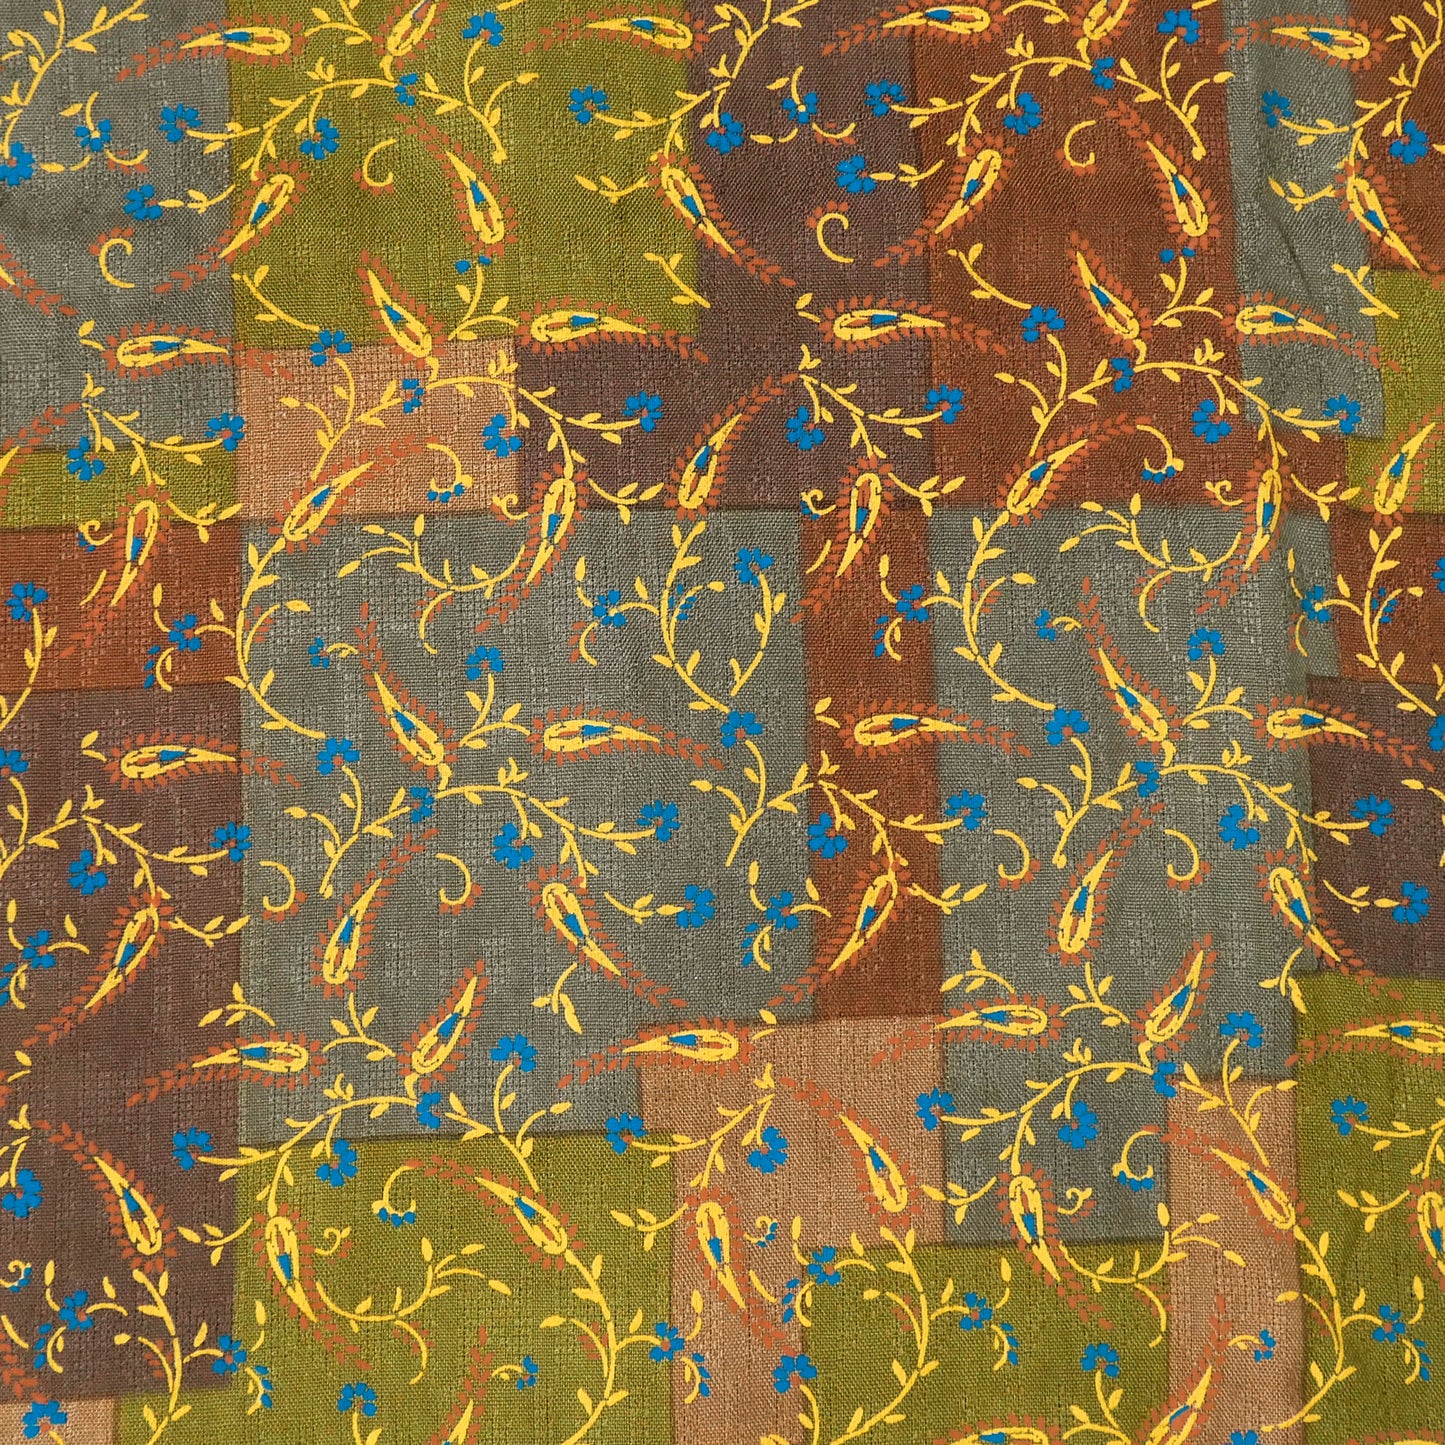 Jersey de rayon jacquard con estampado de flores de encaje de 2 colores